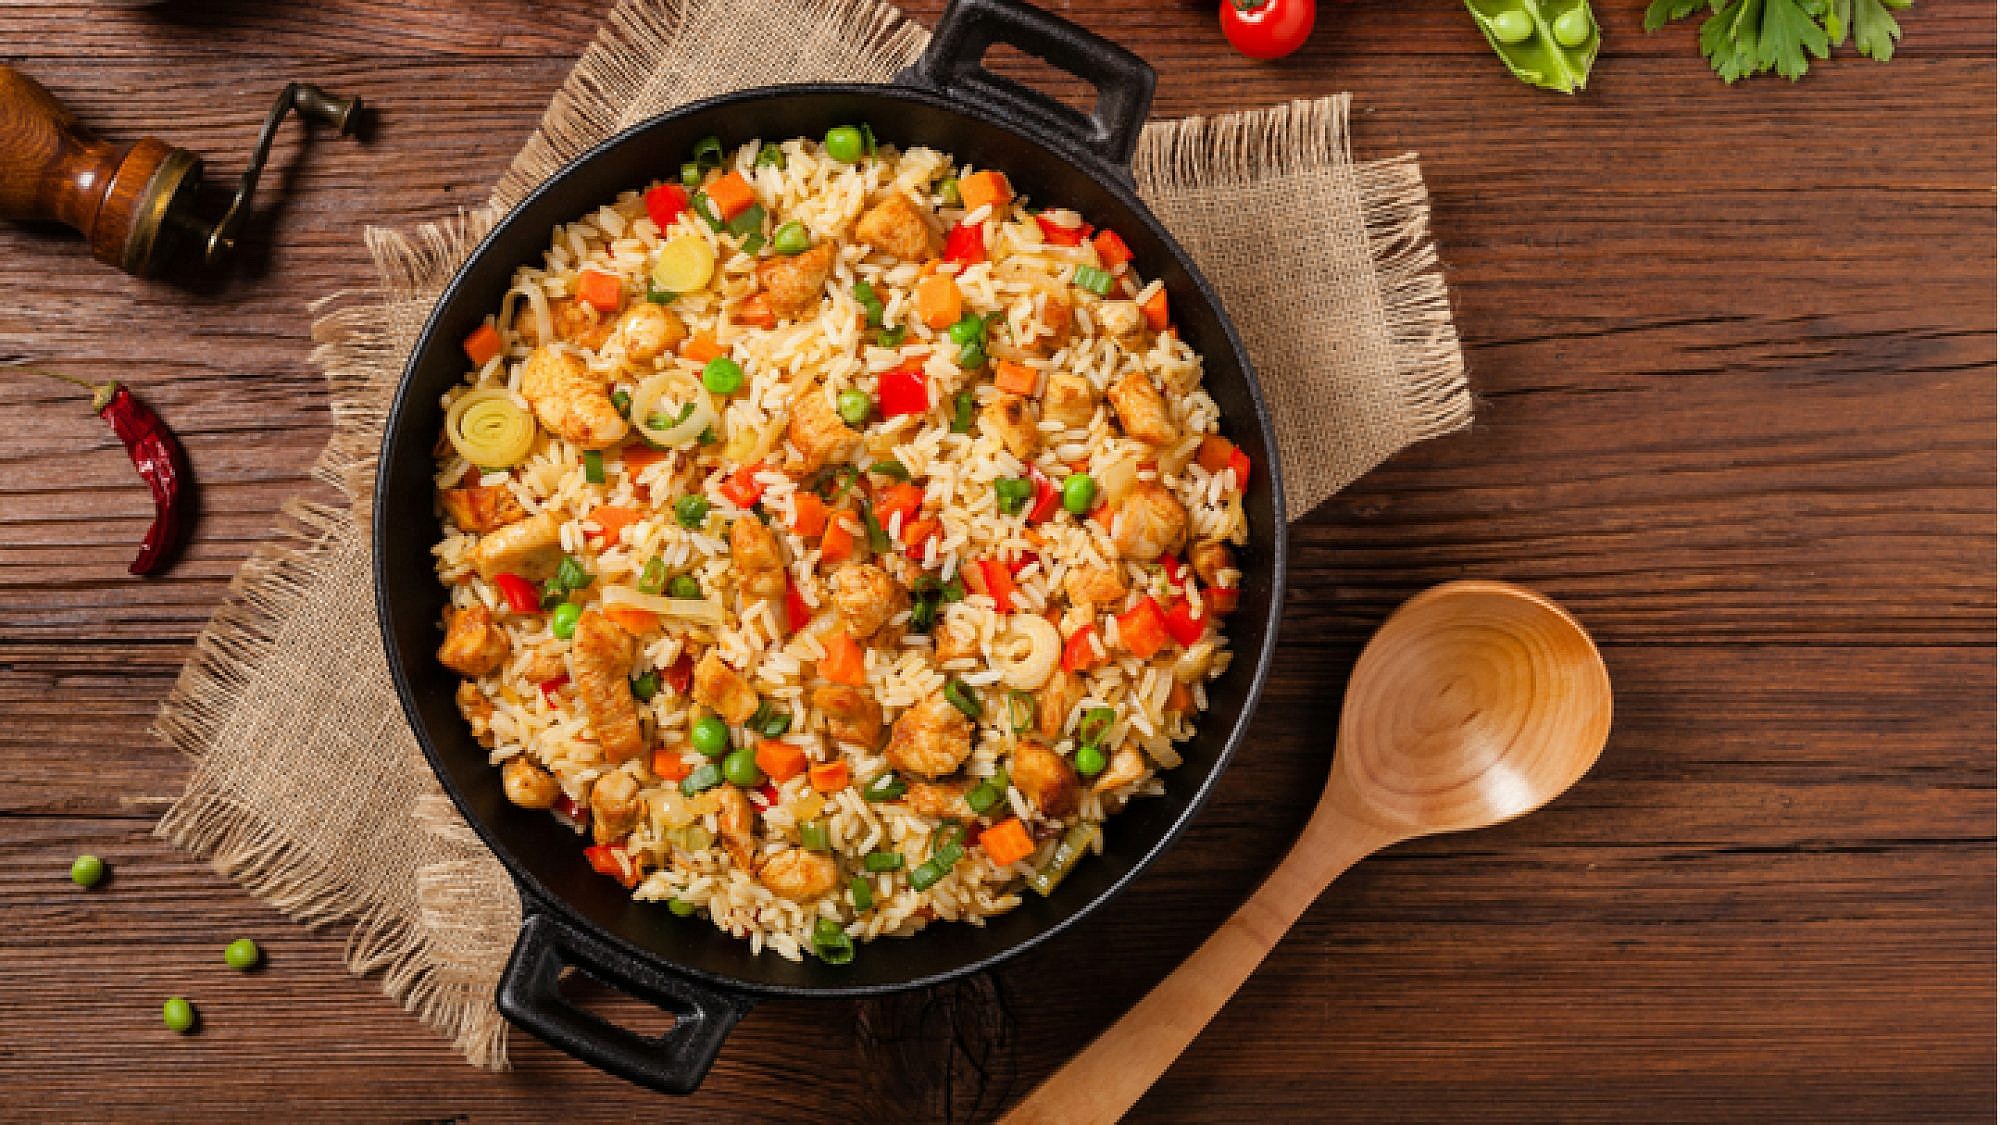 ארוחה שלמה בסיר אחד: עוף בלימון כבוש על מצע אורז וירוקים | צילום: Shutterstock